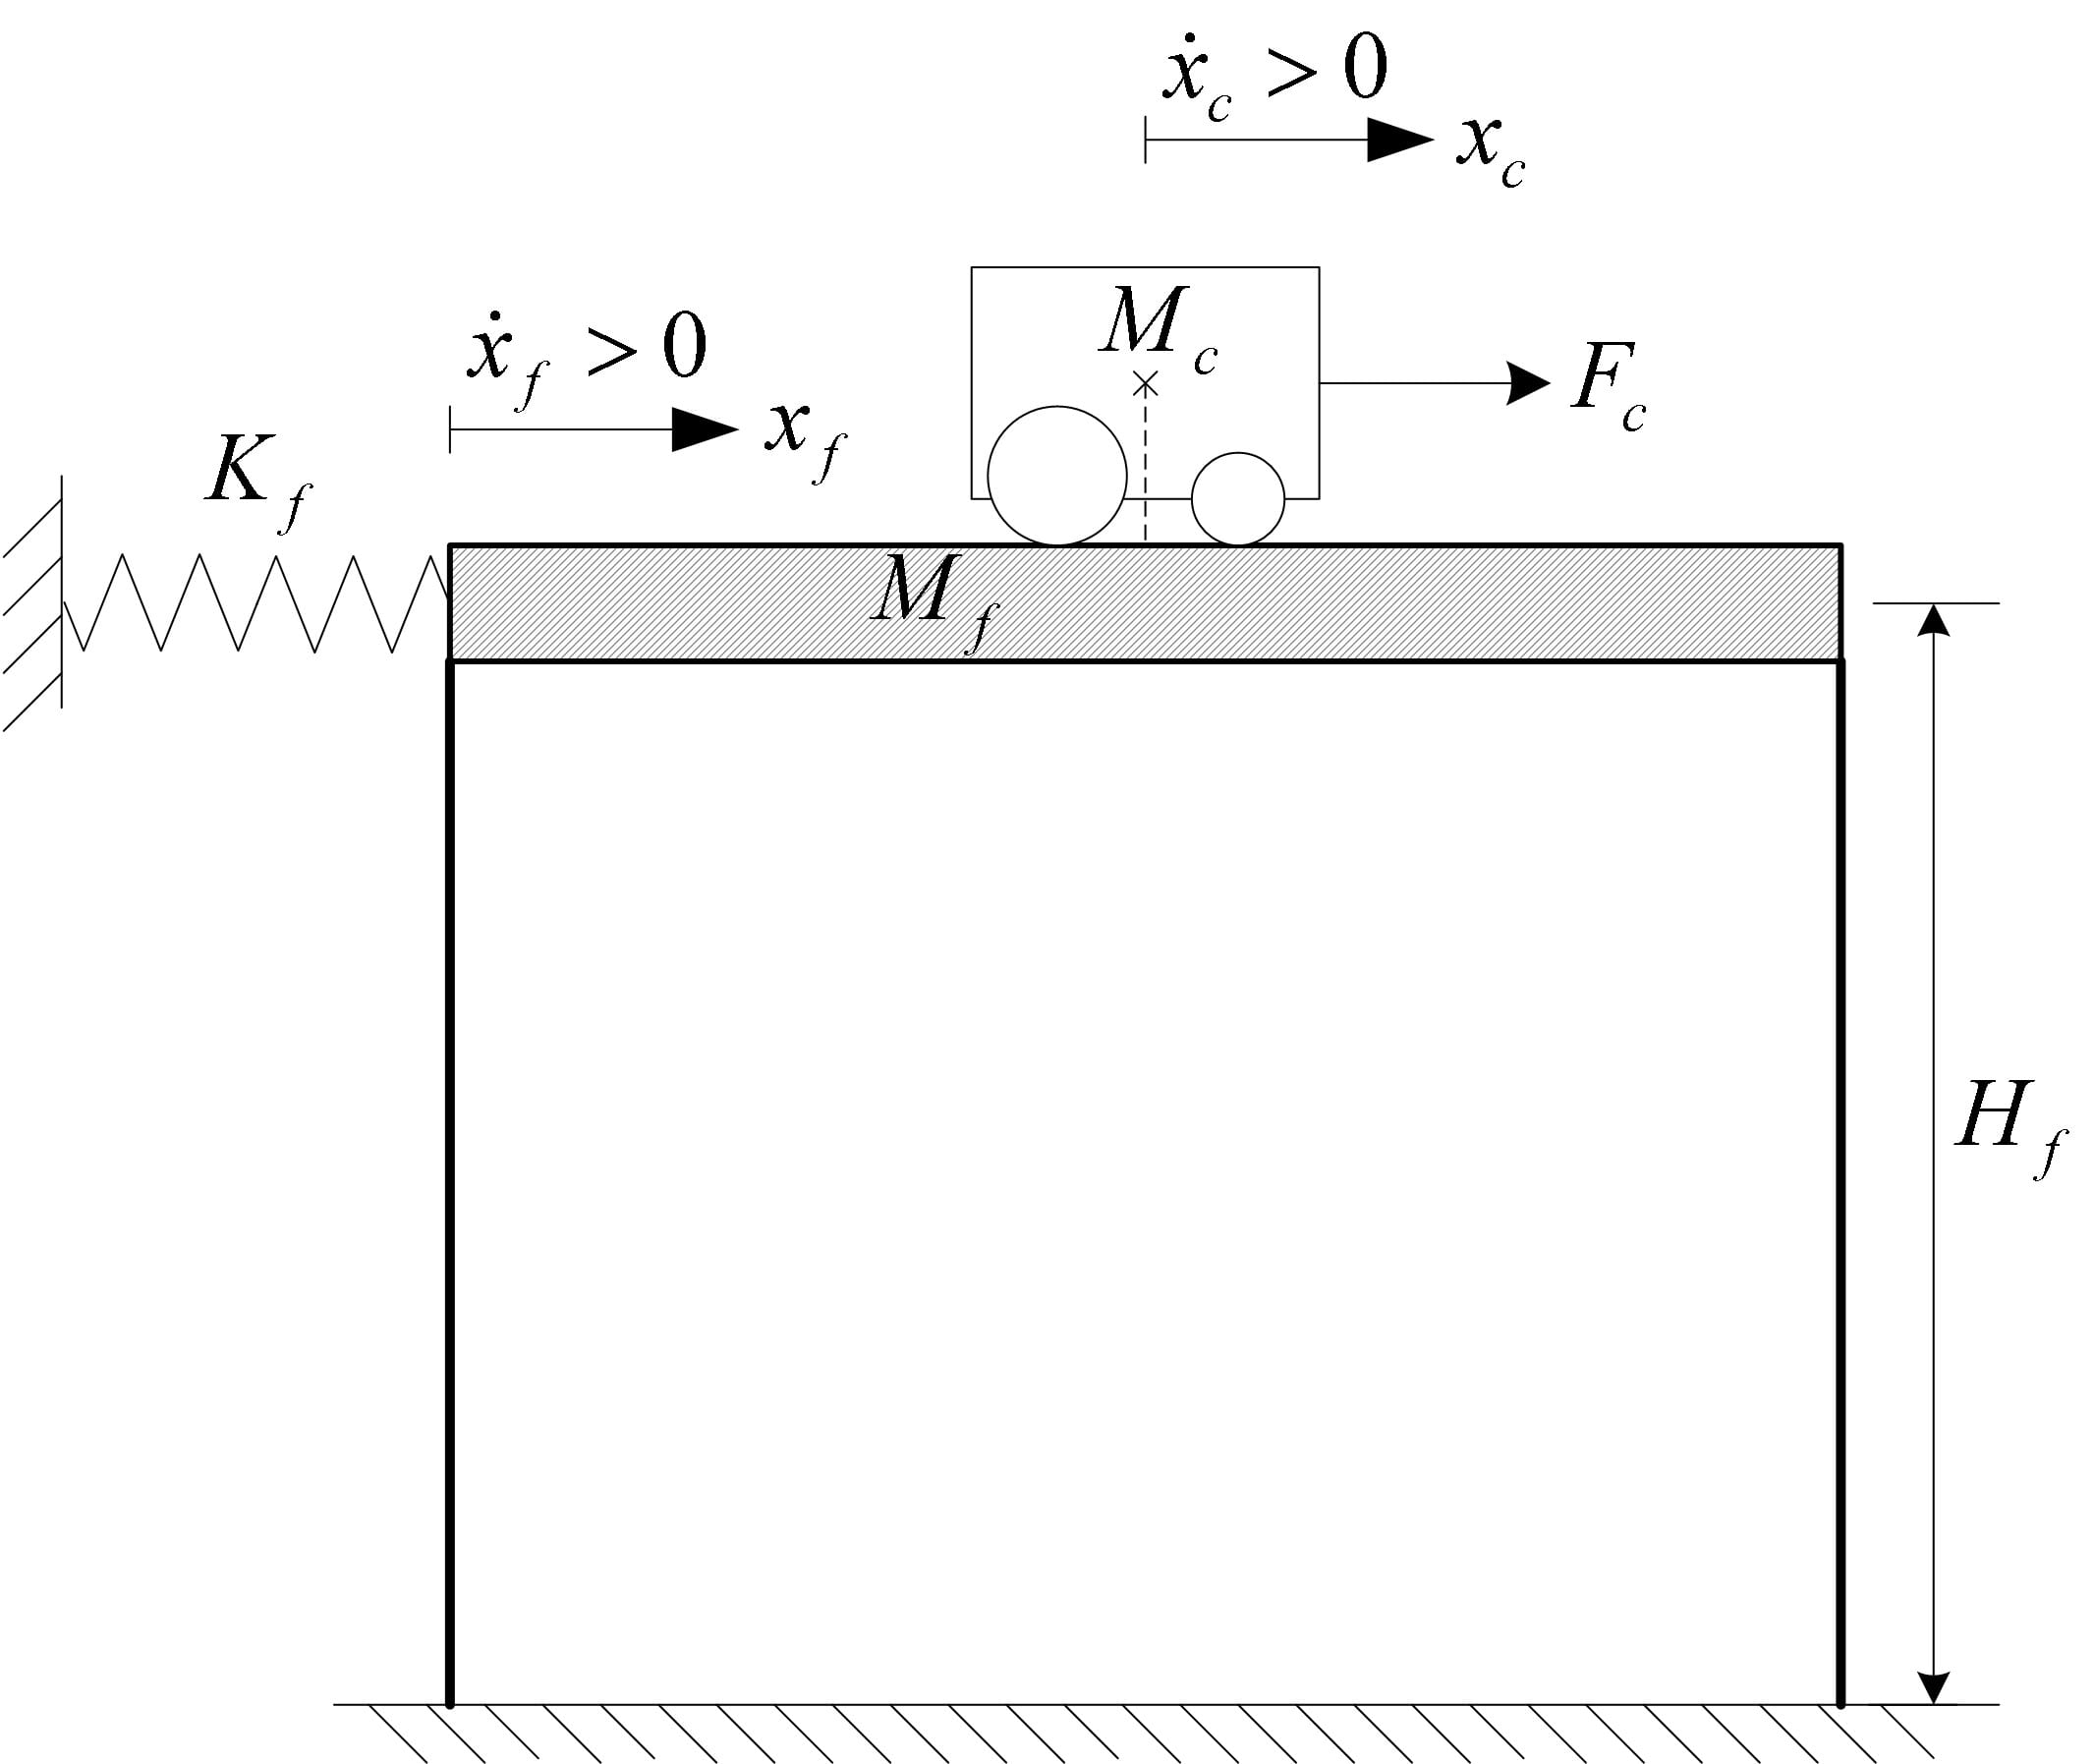 Free body diagram of one-floor active mass damper